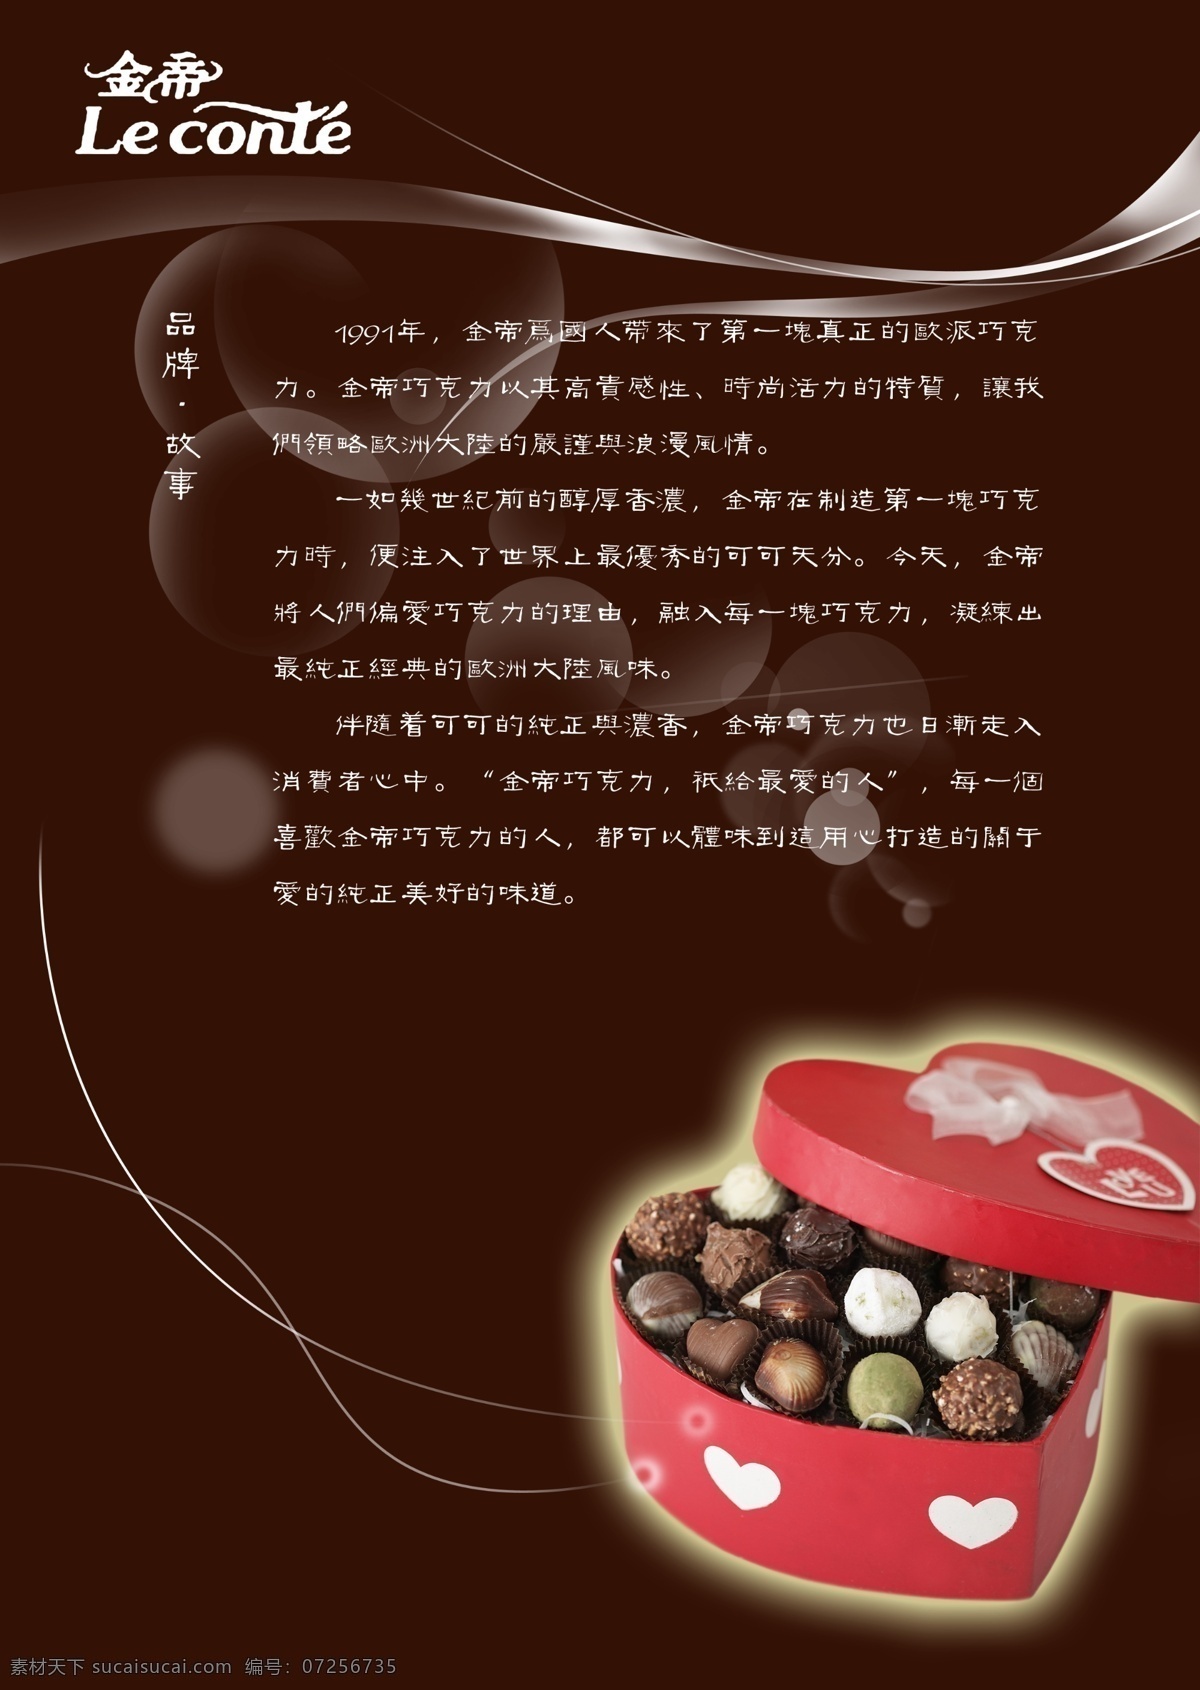 金帝内页 巧克力 浓香 丝滑 甜蜜 巧克力dm单 dm宣传单 广告设计模板 源文件